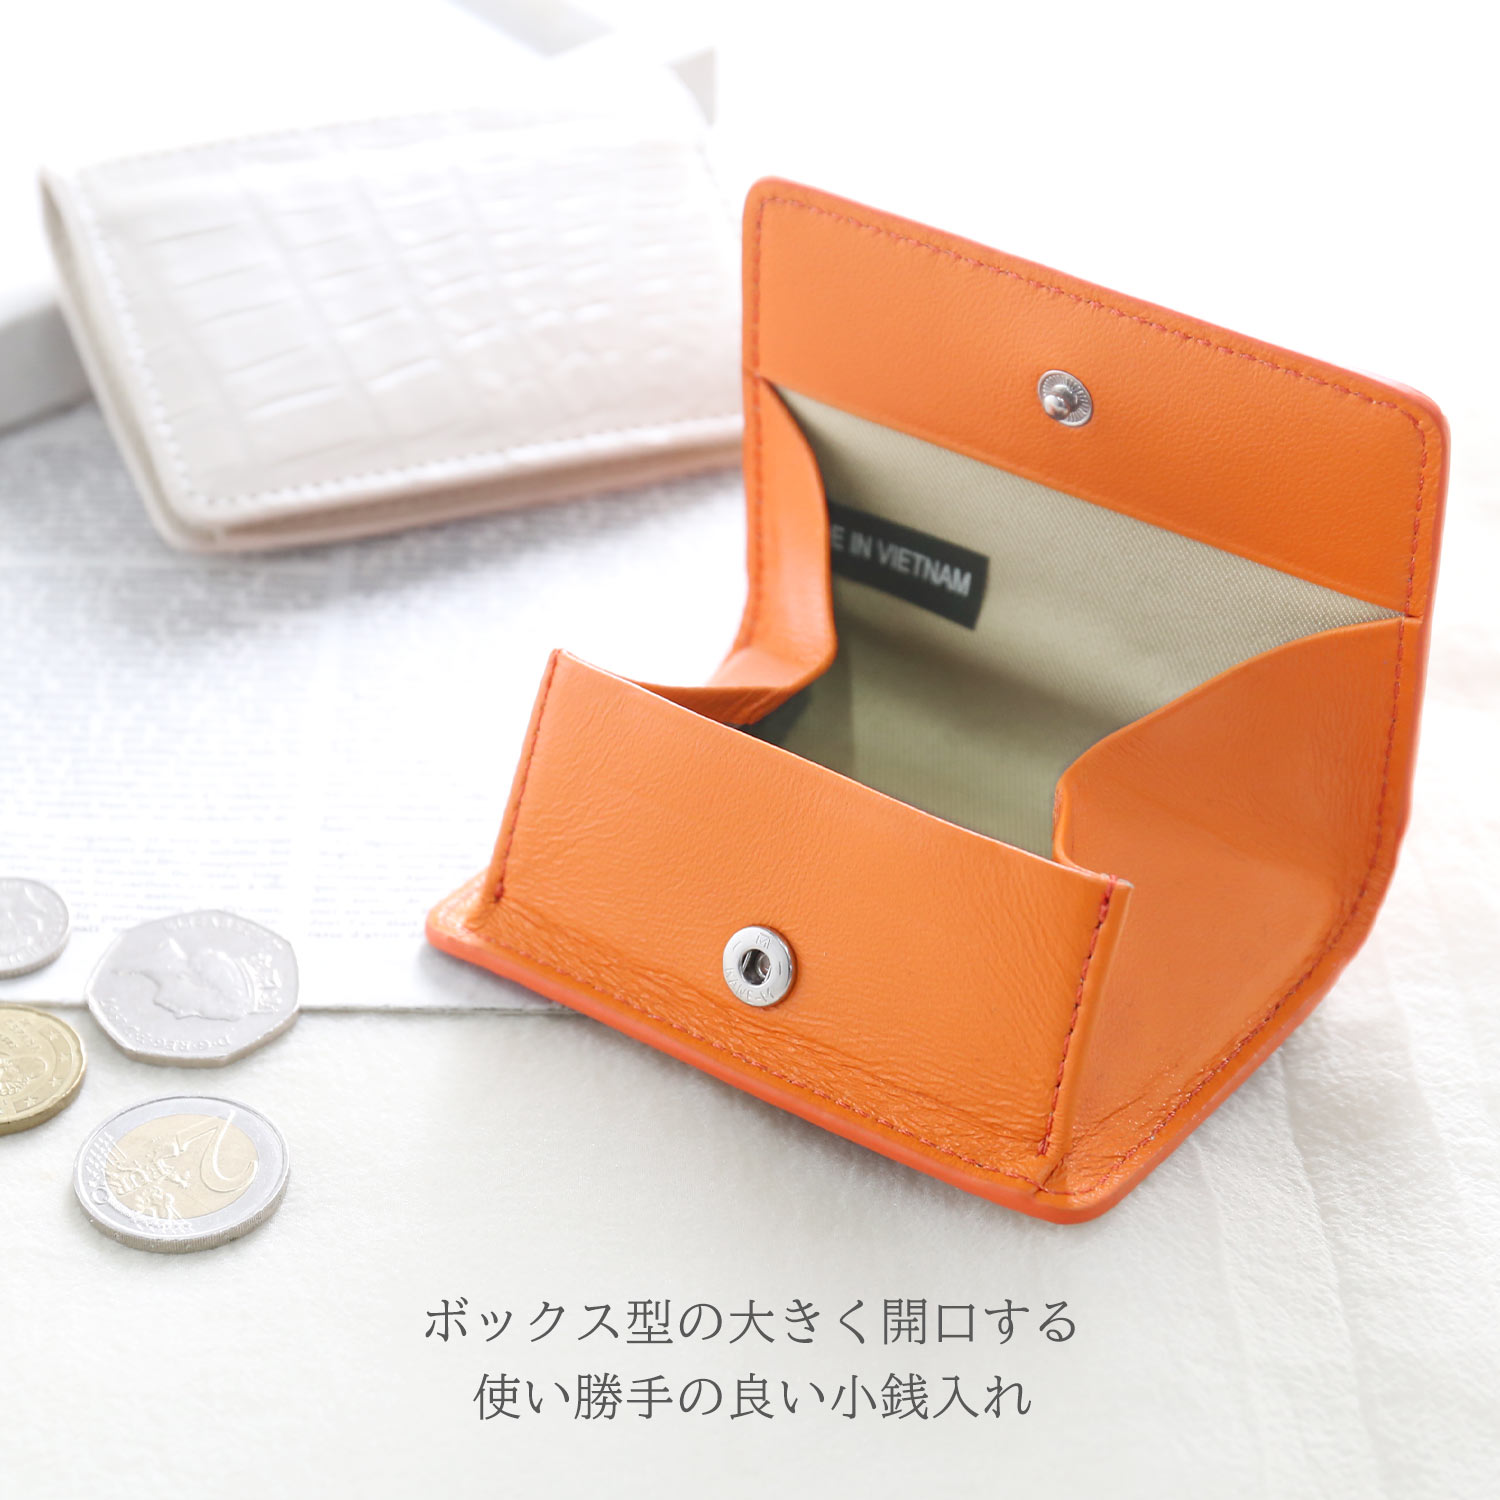 クロコダイル 小銭入れ ボックス型 マット加工 メンズ カード収納 軽量